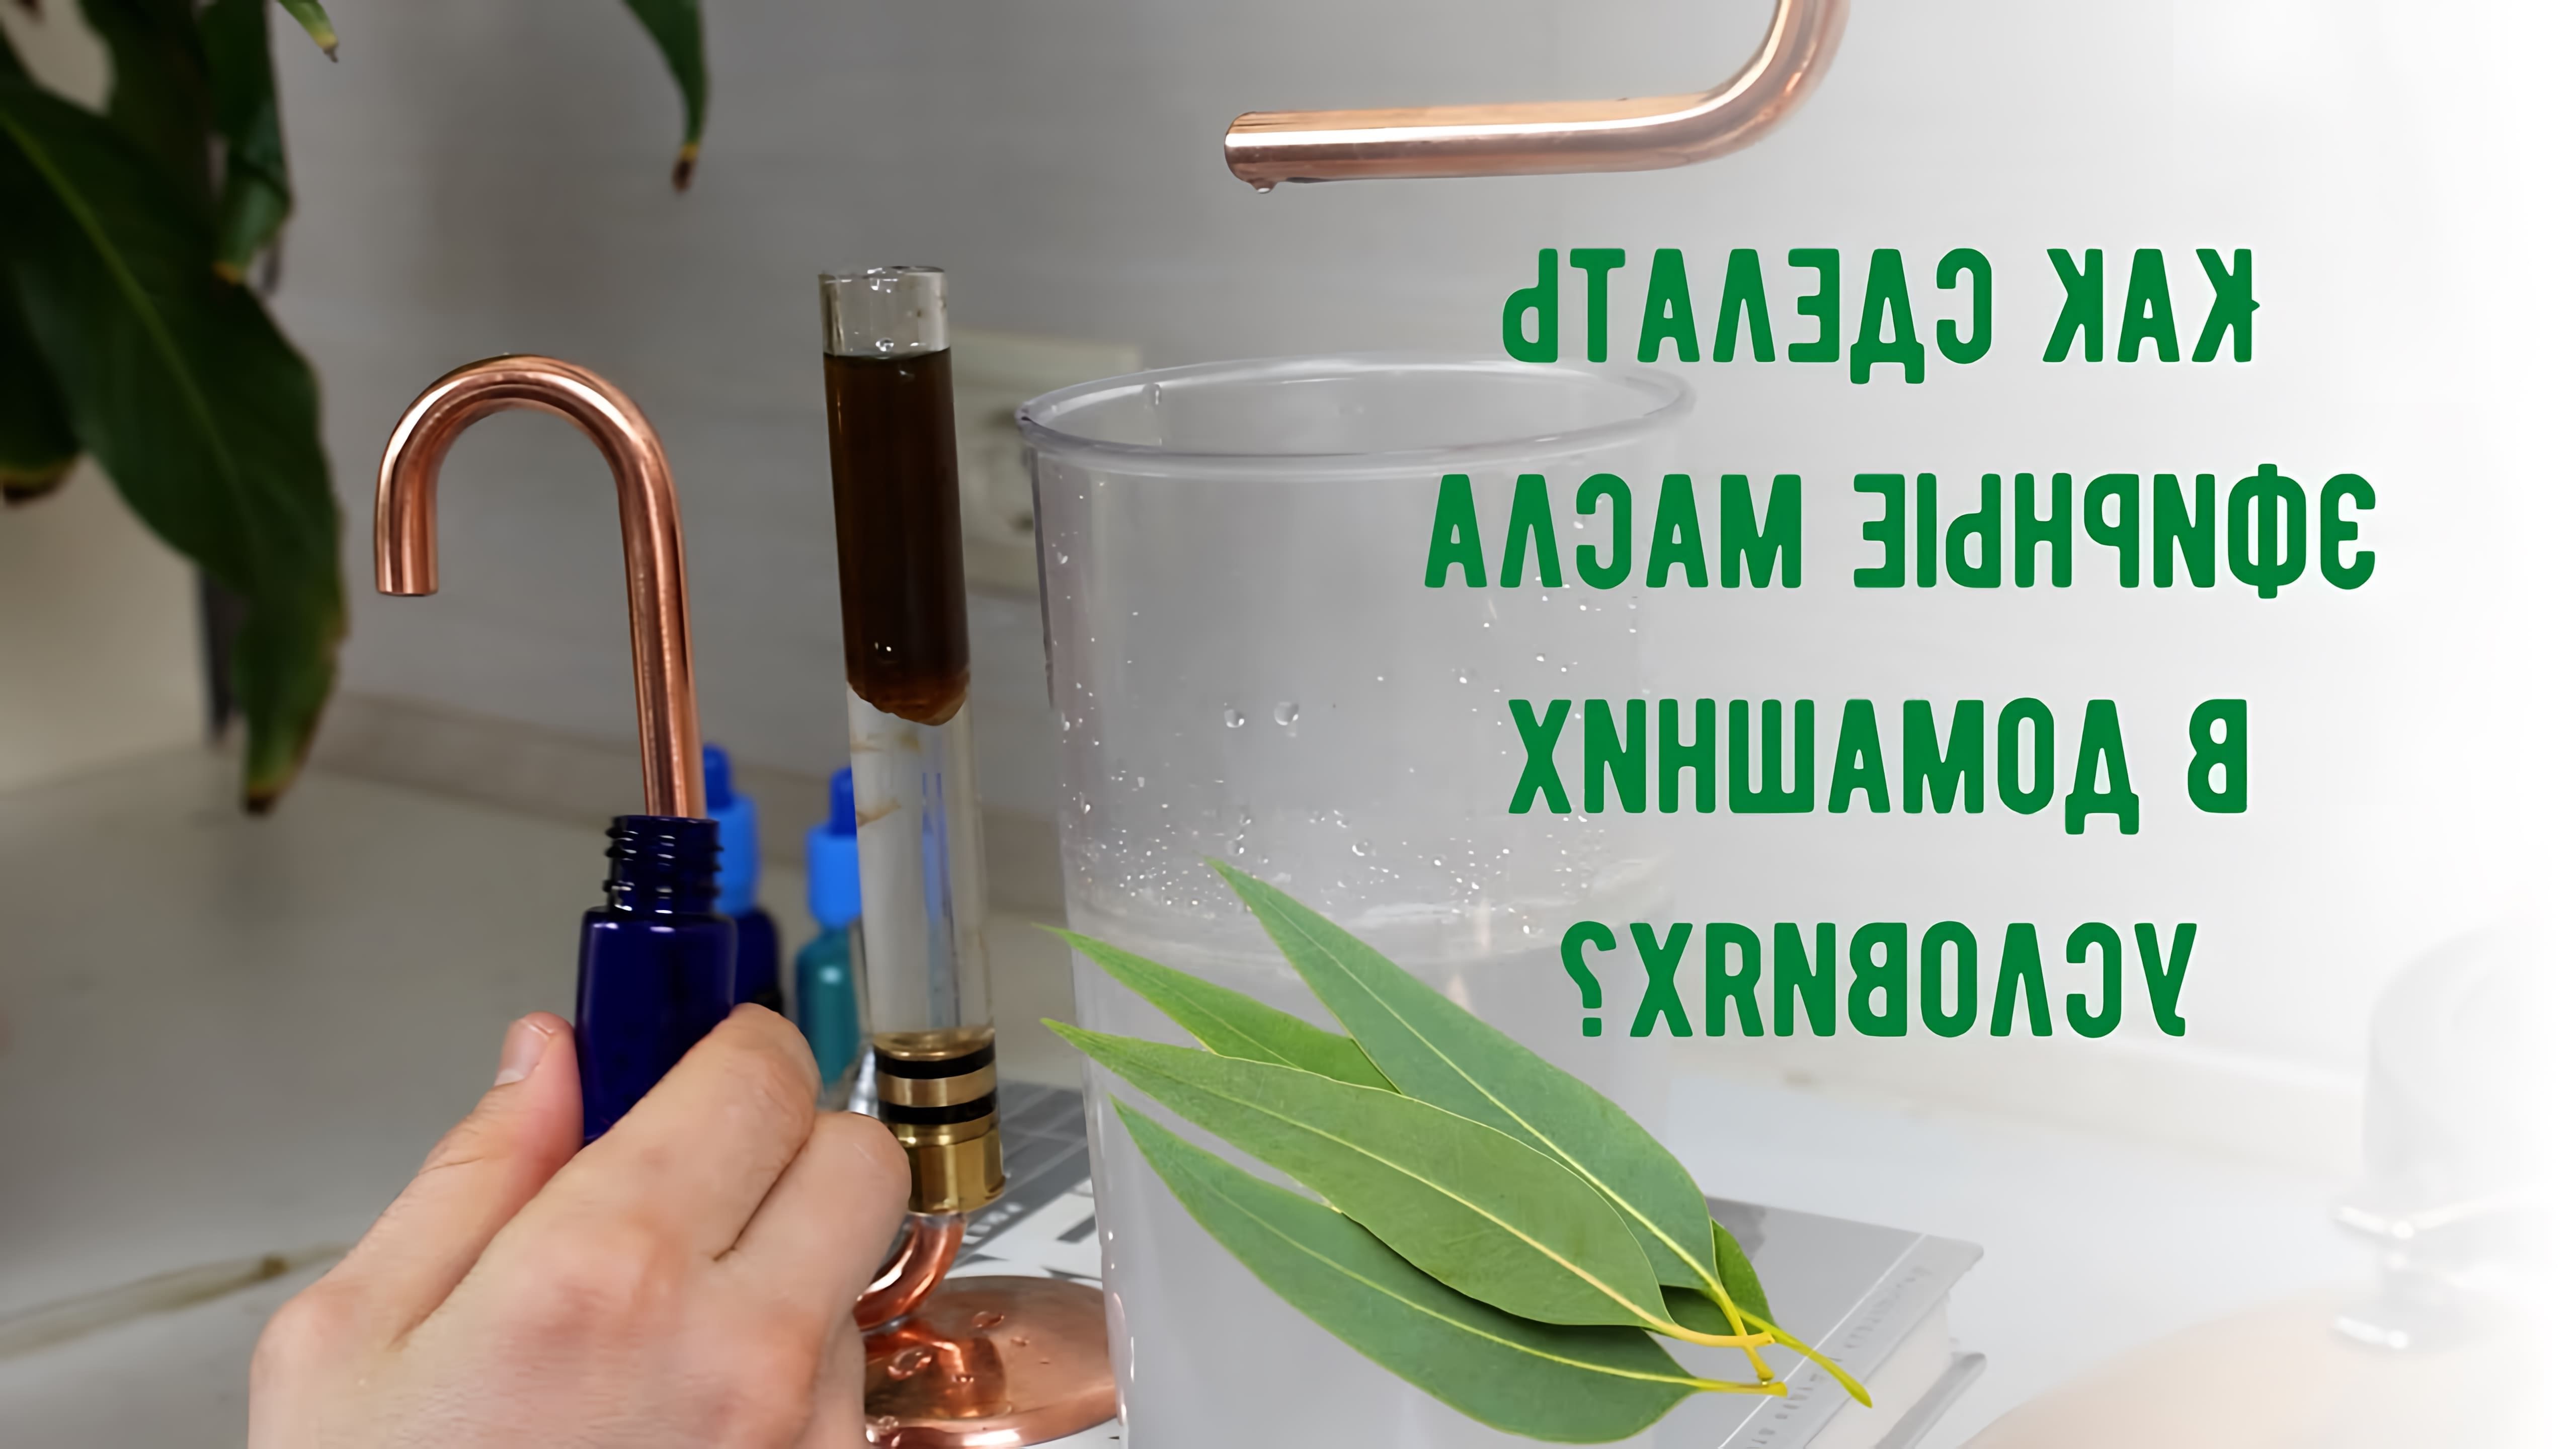 В данном видео демонстрируется процесс изготовления эфирного масла эвкалипта в домашних условиях с помощью специального оборудования